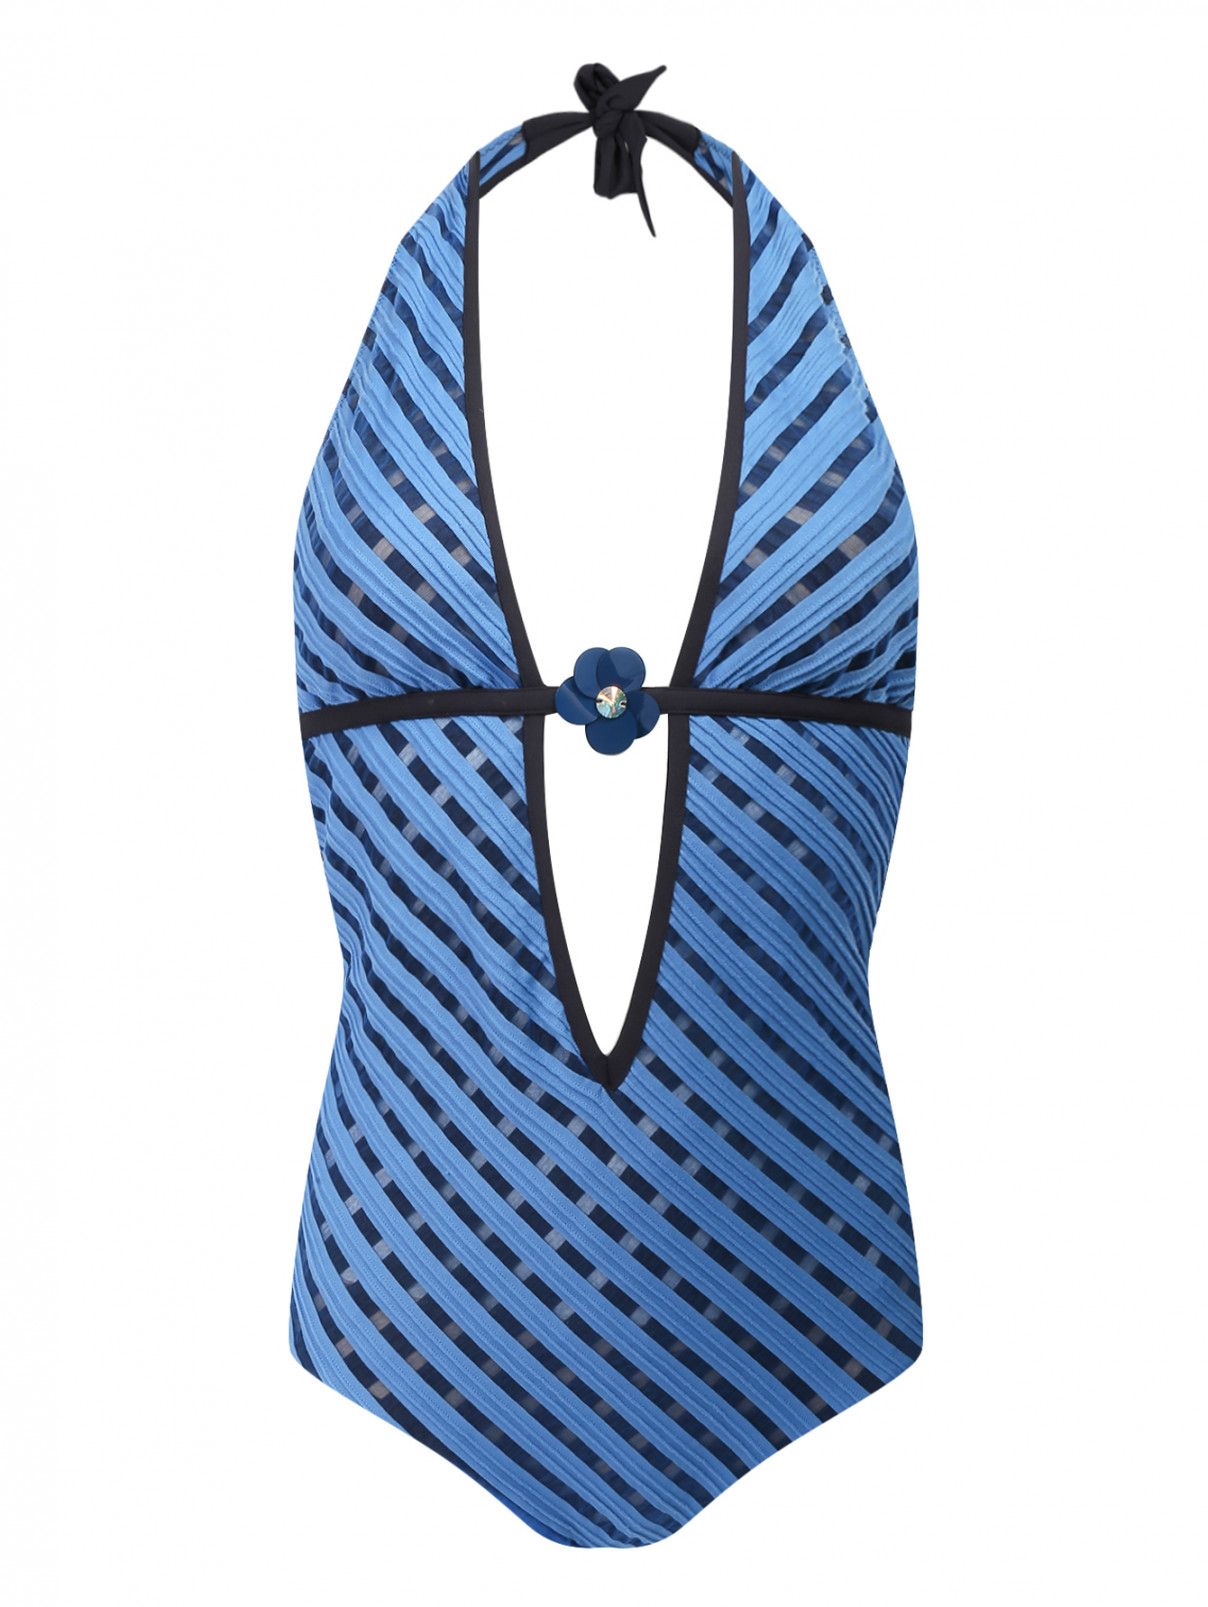 Купальник слитный с узором "полоска" La Perla  –  Общий вид  – Цвет:  Синий